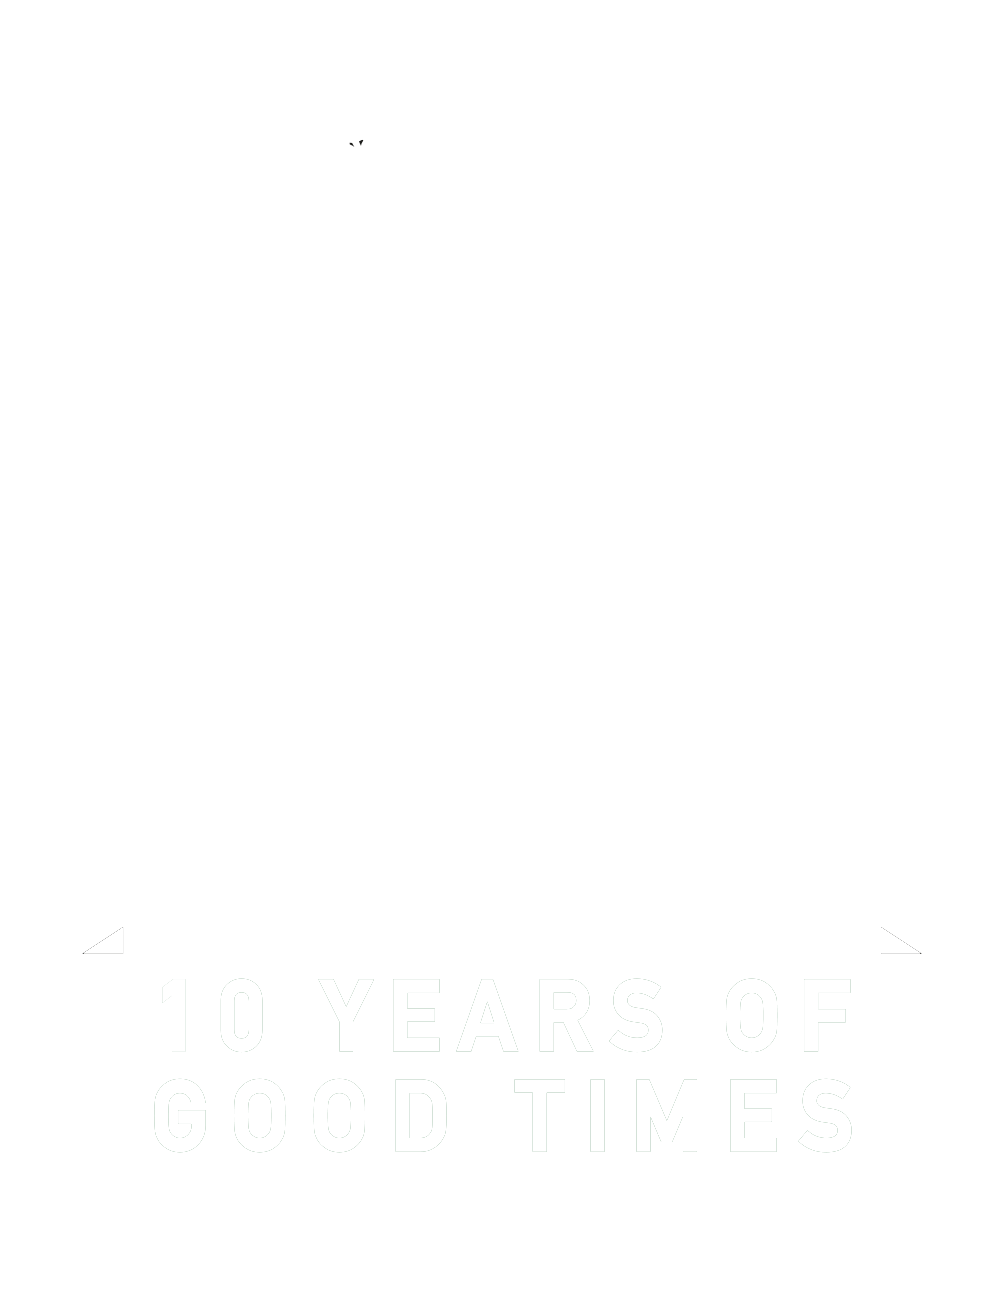 Witcombe Festival